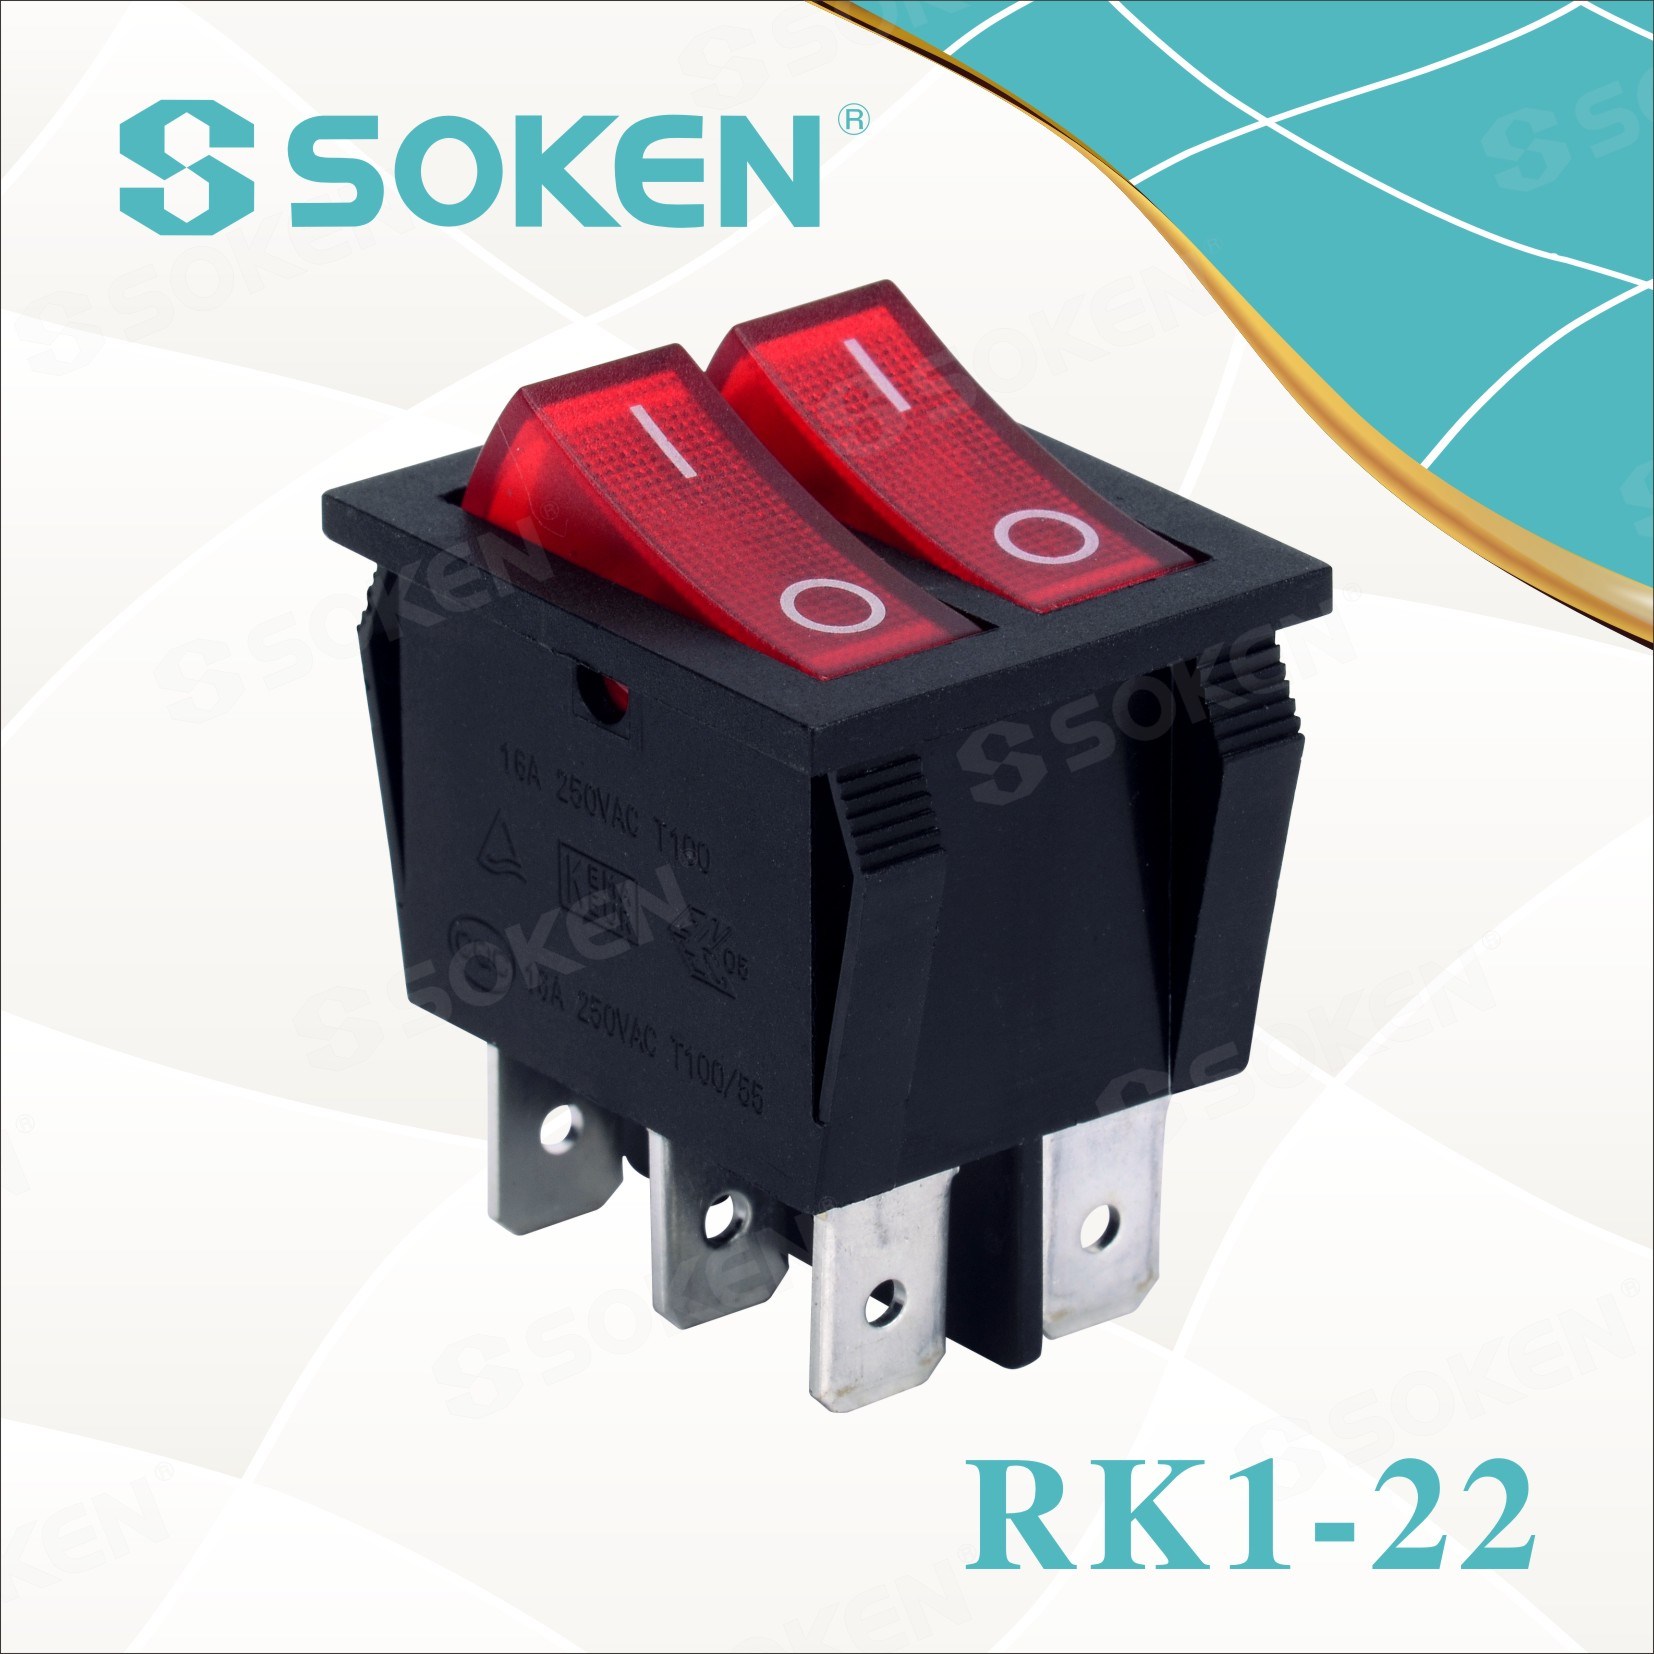 Soken Rk1-22 1X1X2n on off Işıklı Çift Basmalı Anahtar